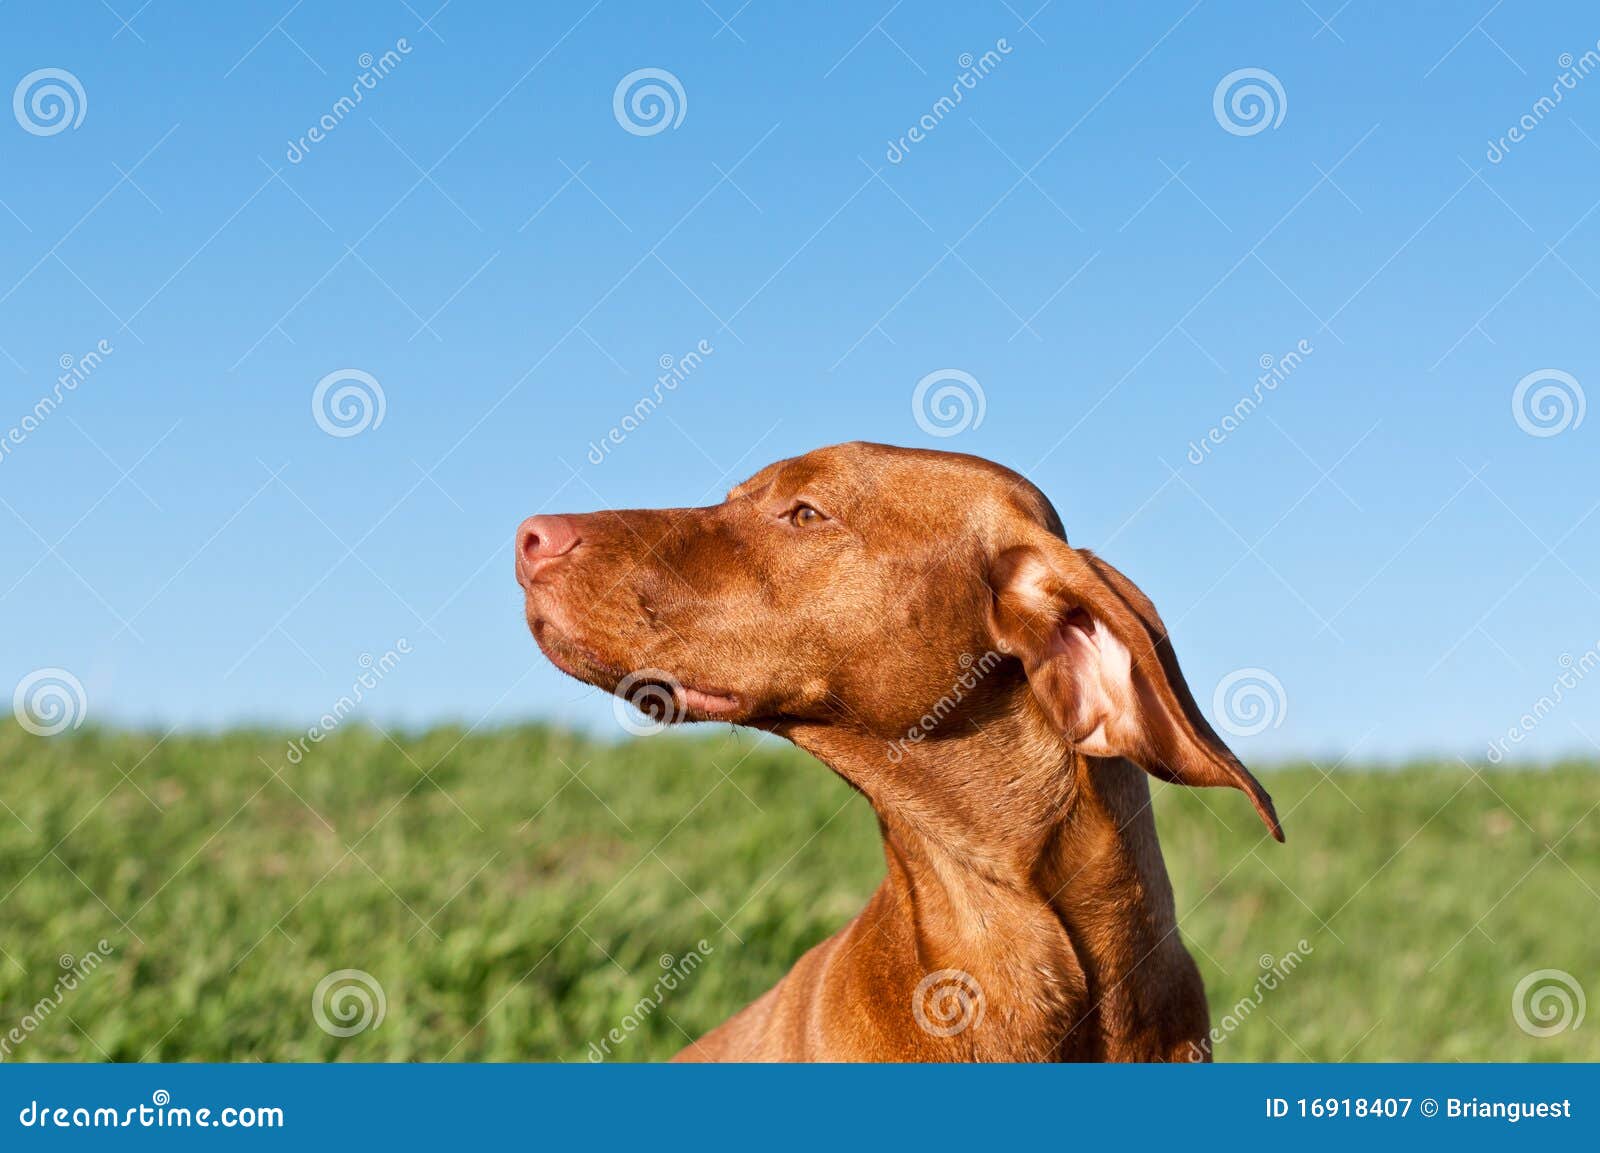 profile portrait of a sunlit vizsla dog